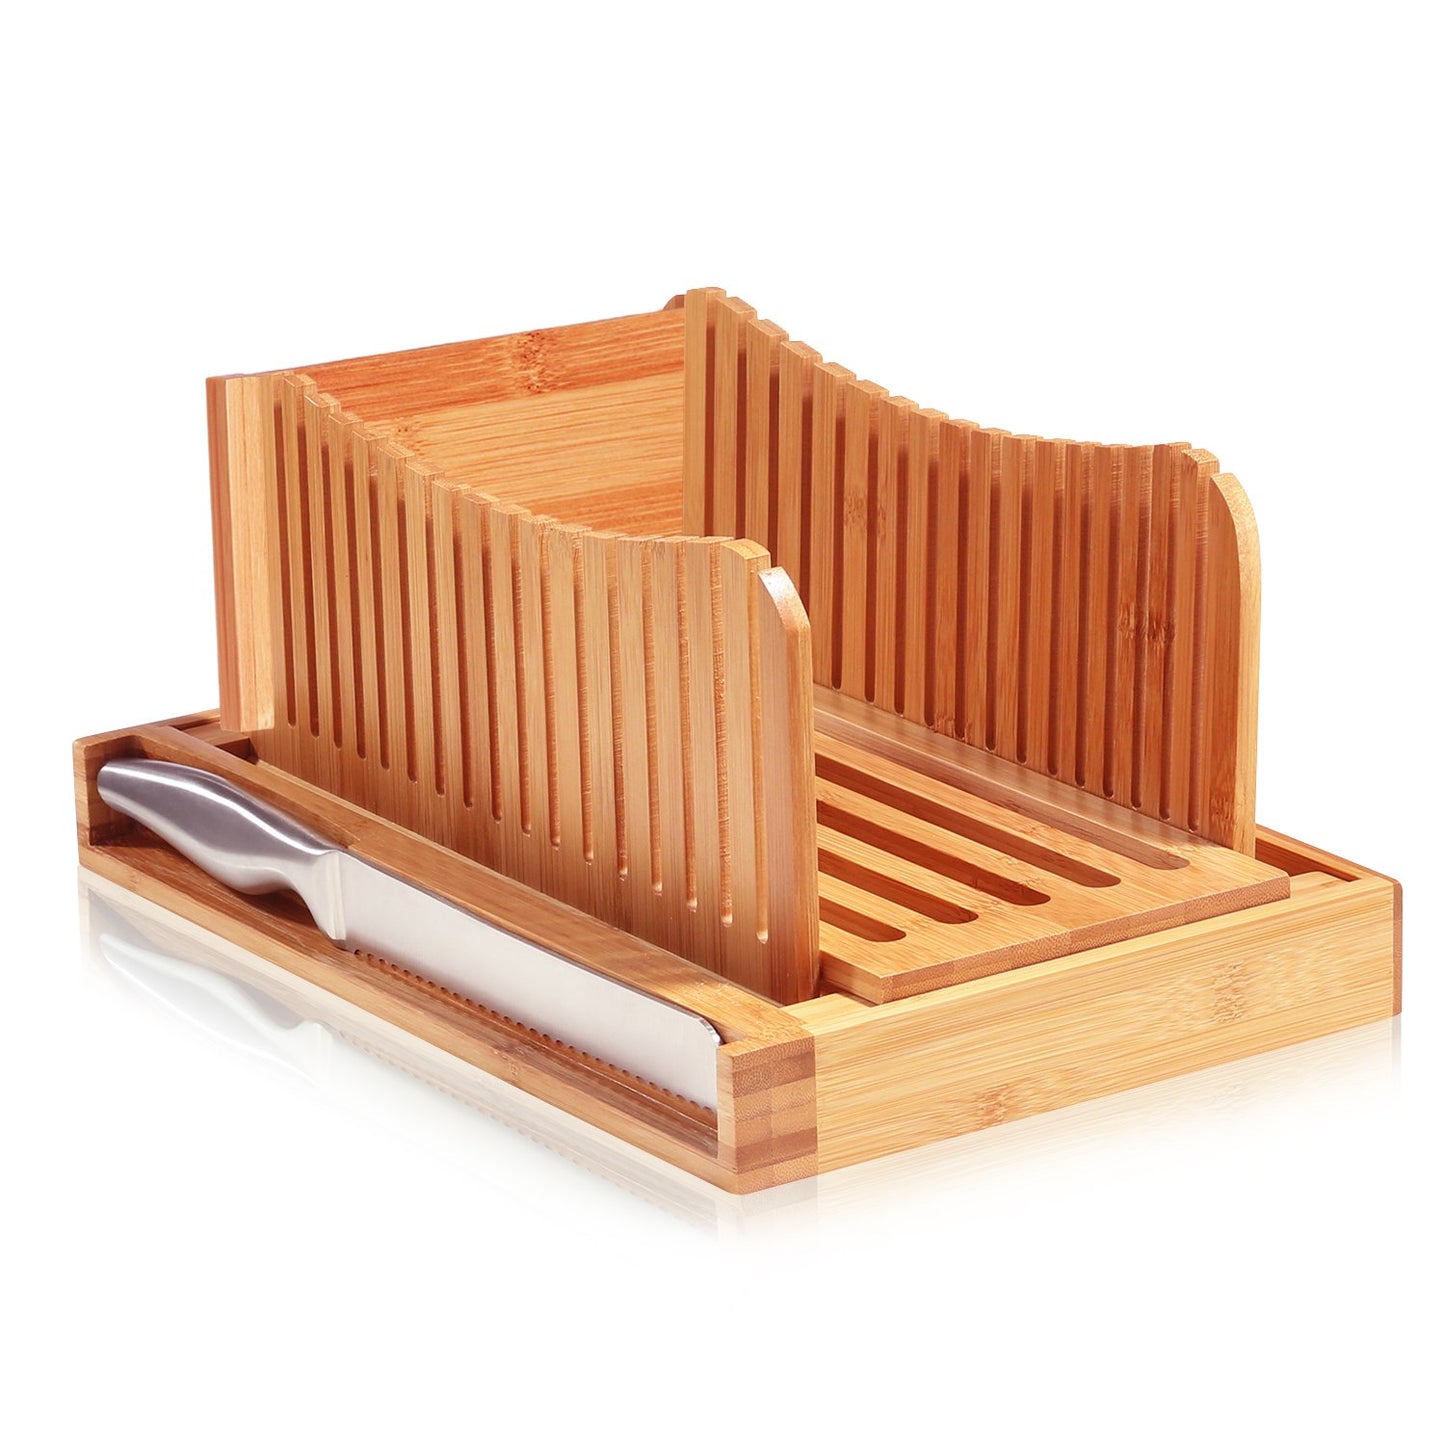 Foldable Bamboo Bread Slicer - Western Nest, LLC